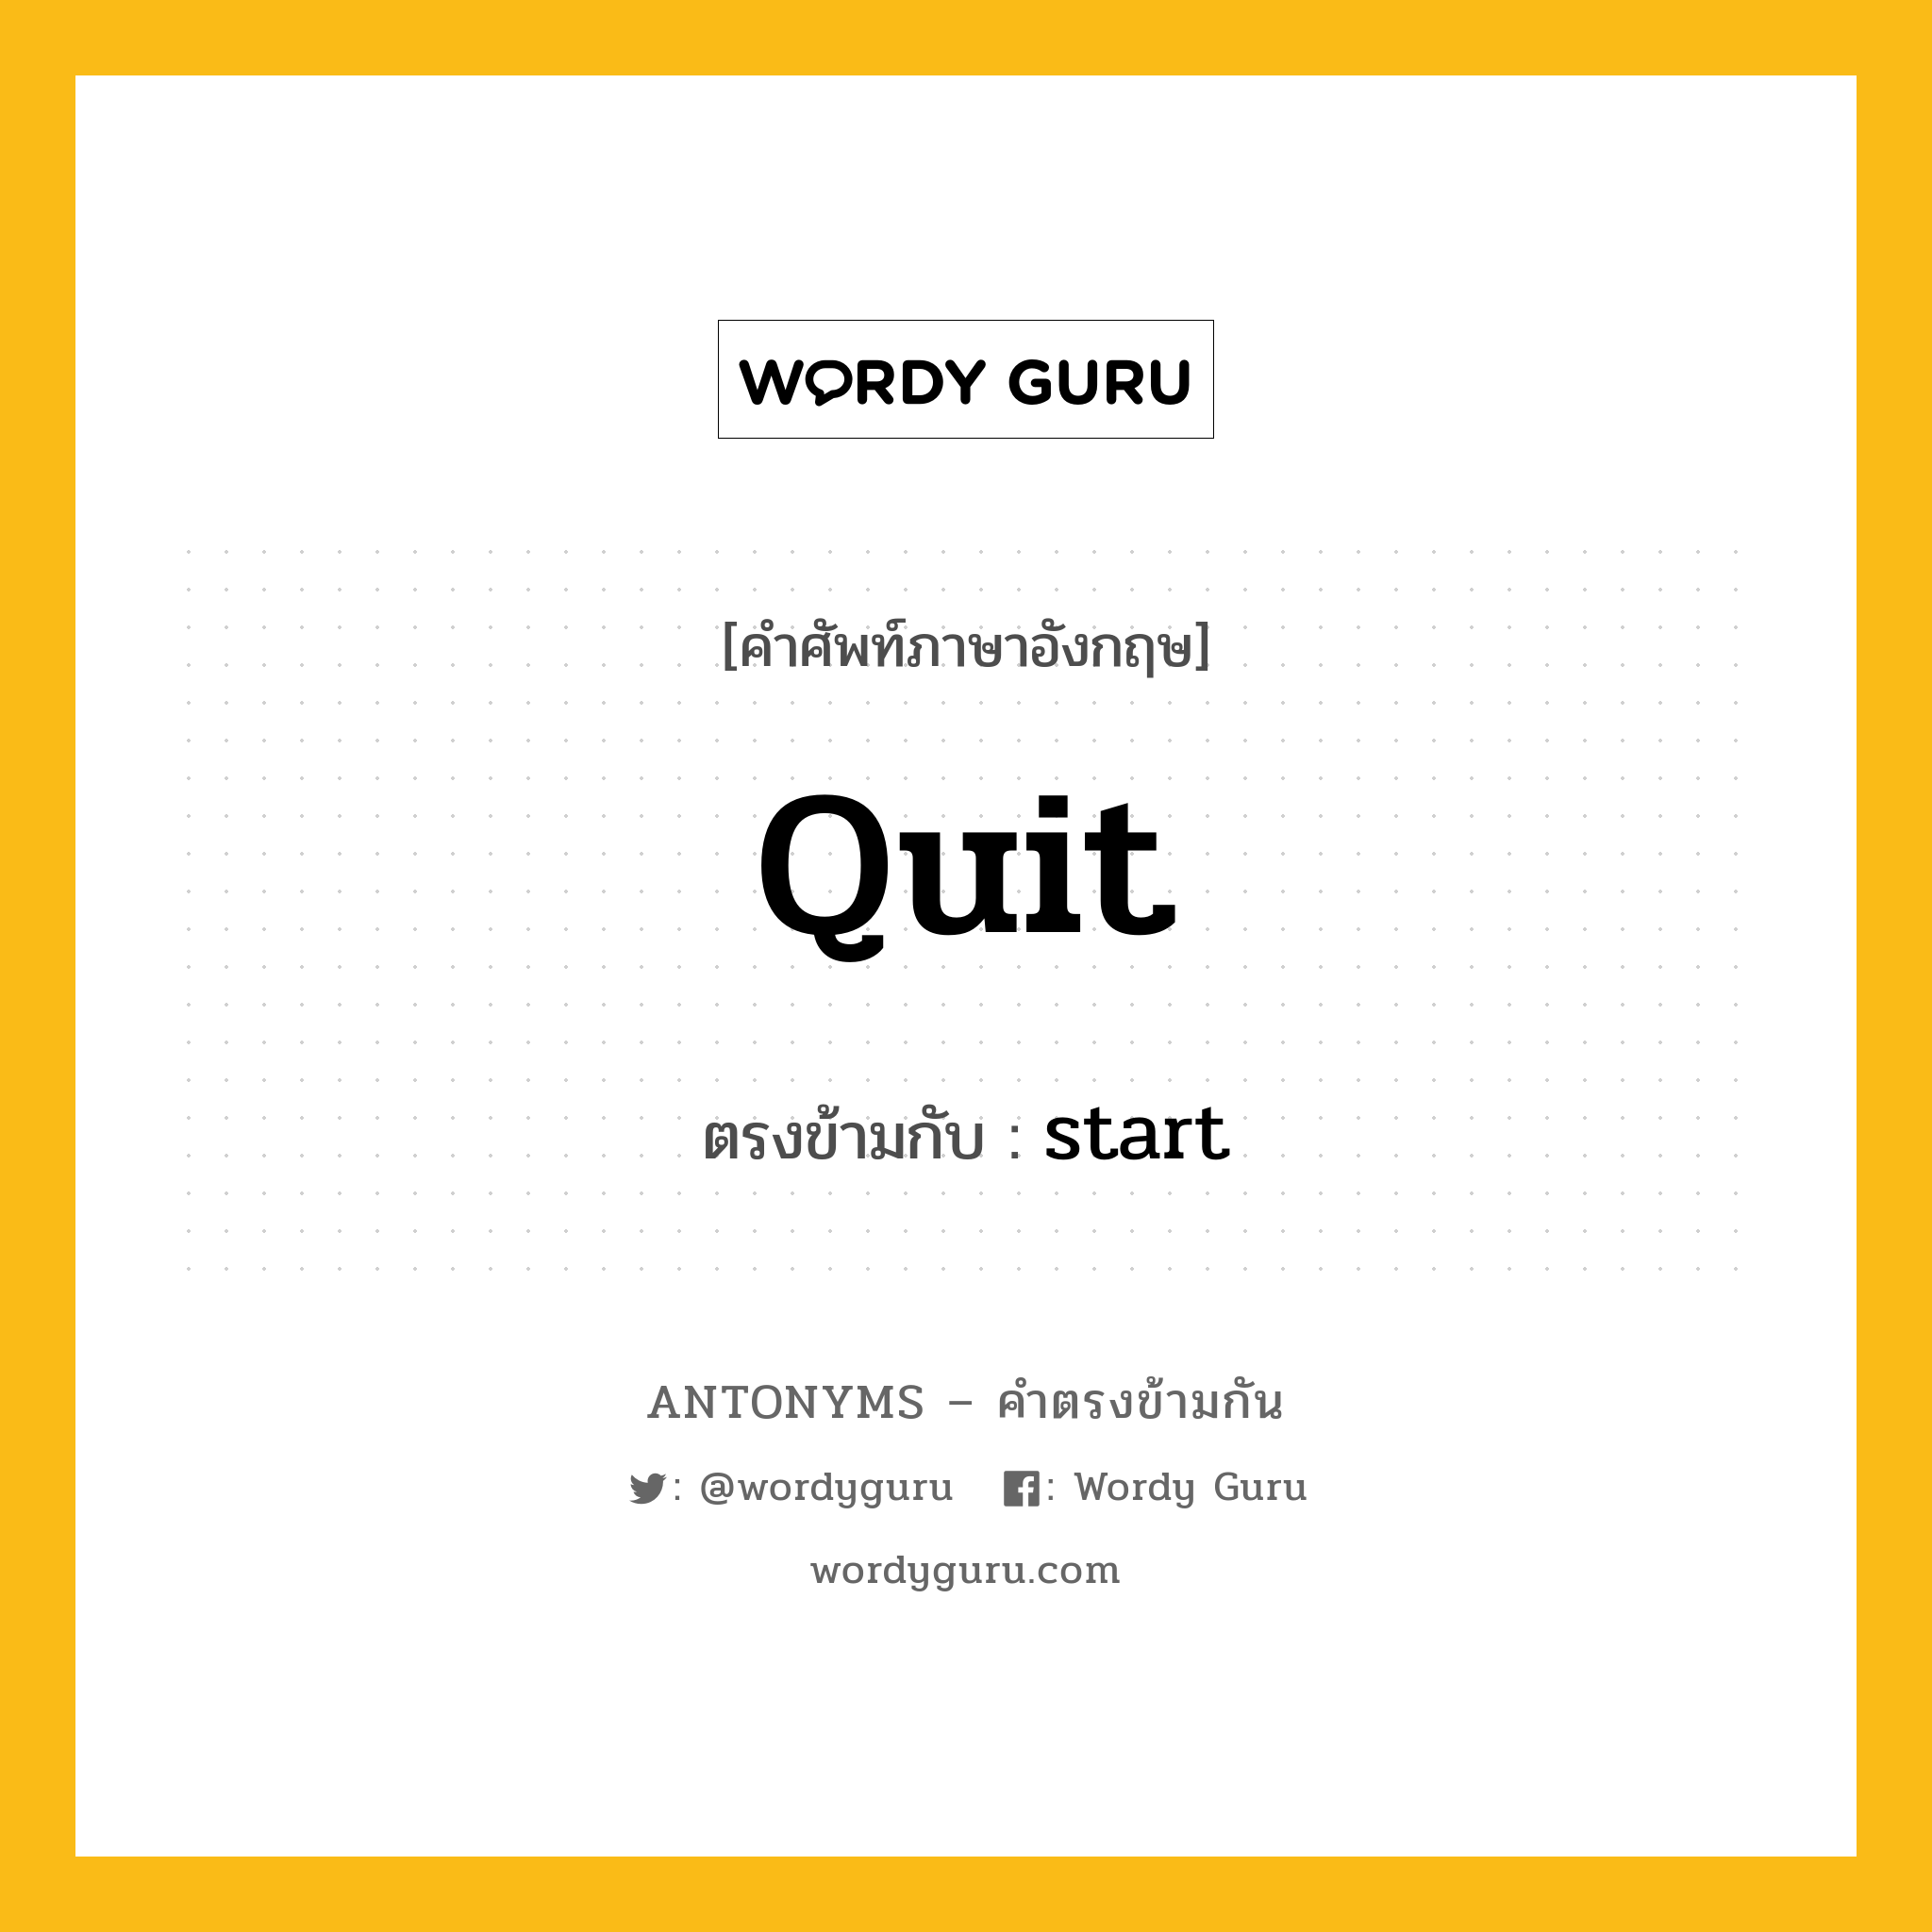 quit เป็นคำตรงข้ามกับคำไหนบ้าง?, คำศัพท์ภาษาอังกฤษ quit ตรงข้ามกับ start หมวด start